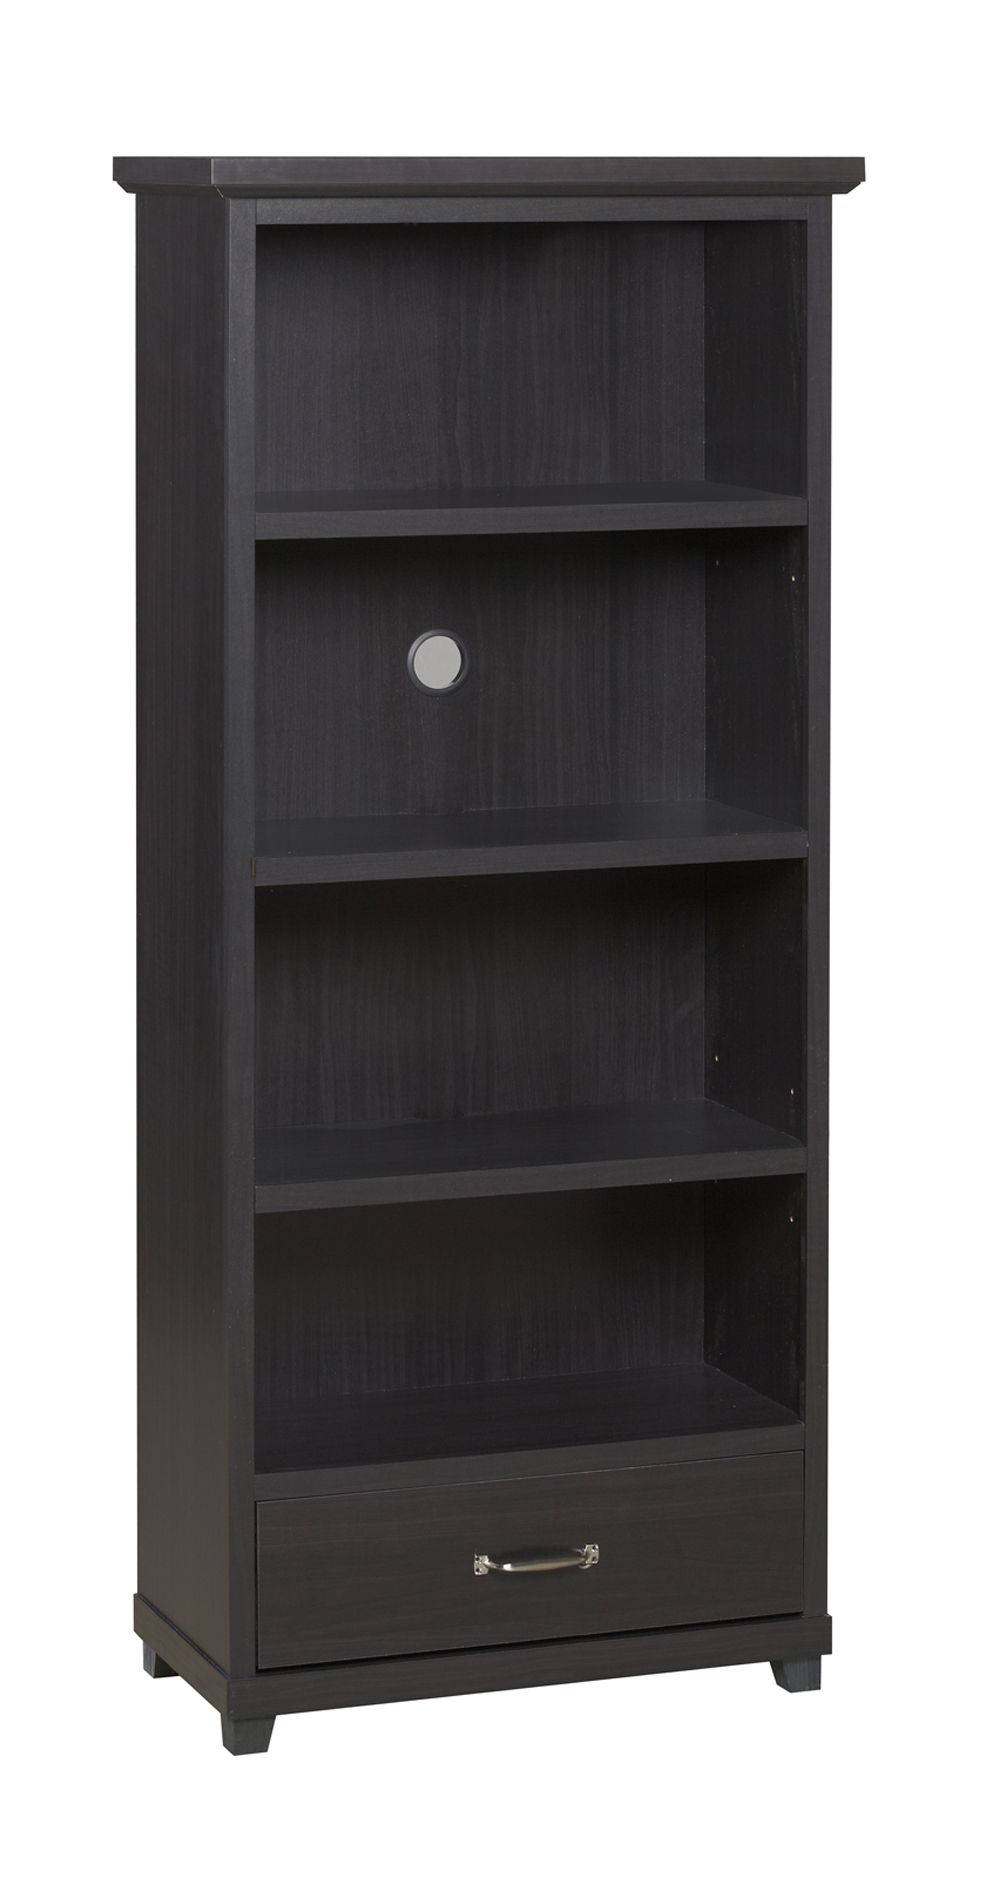 4-Shelf Bookcase with Drawer in Dark Espresso